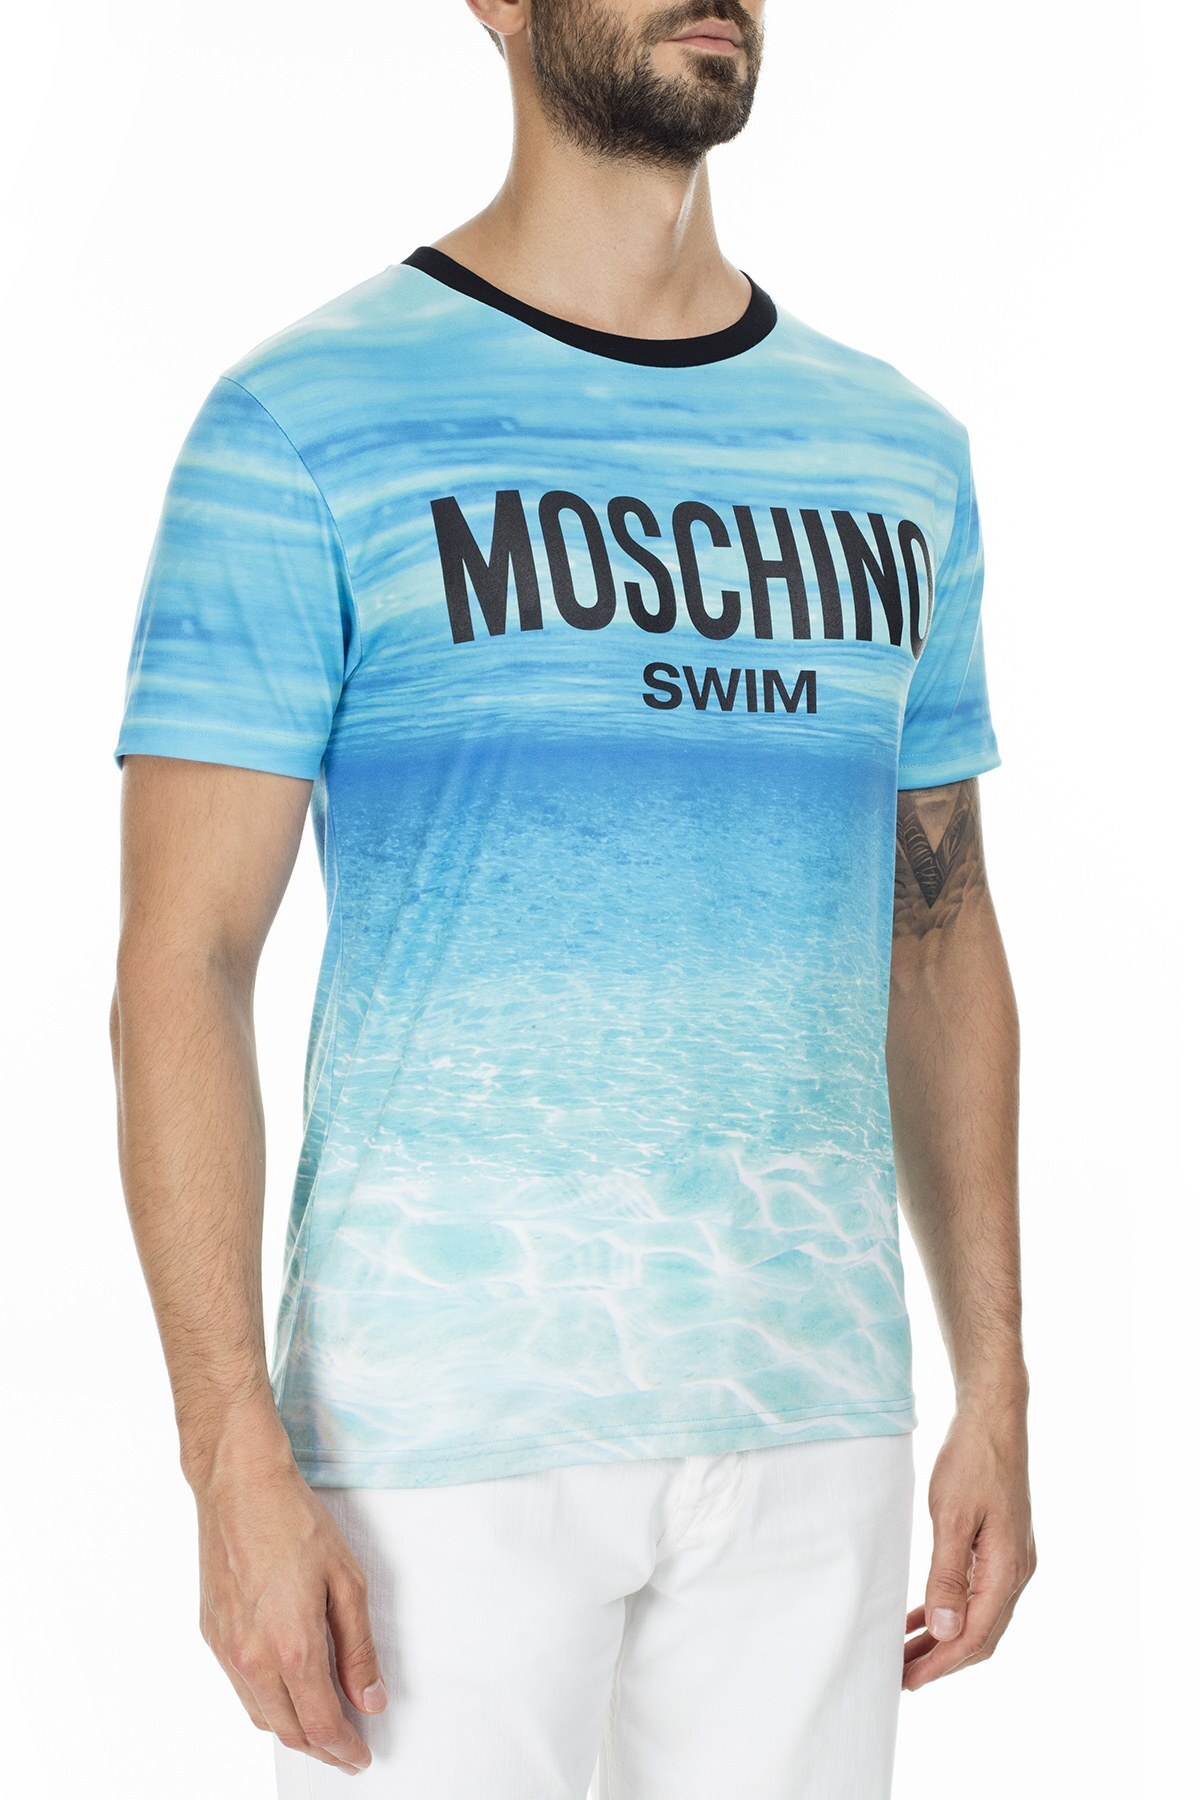 Moschino Erkek T Shirt A1901 2322 1888 MAVİ